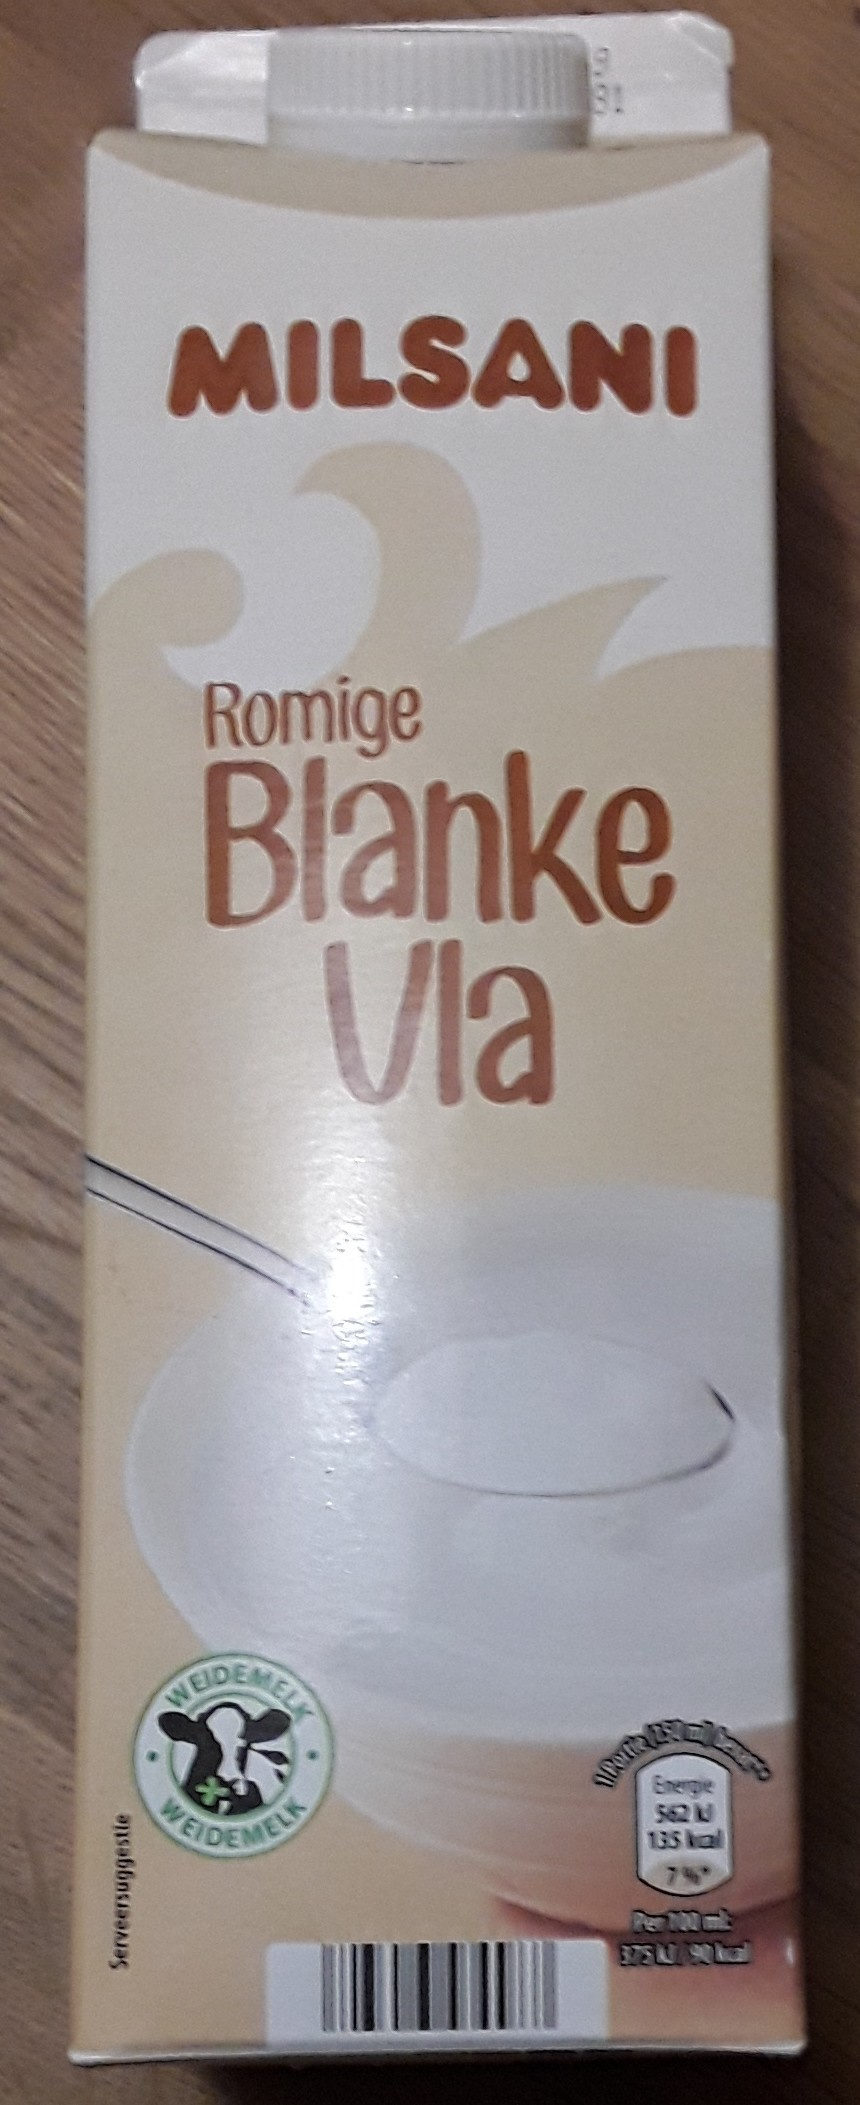 Blanke Vla - Product